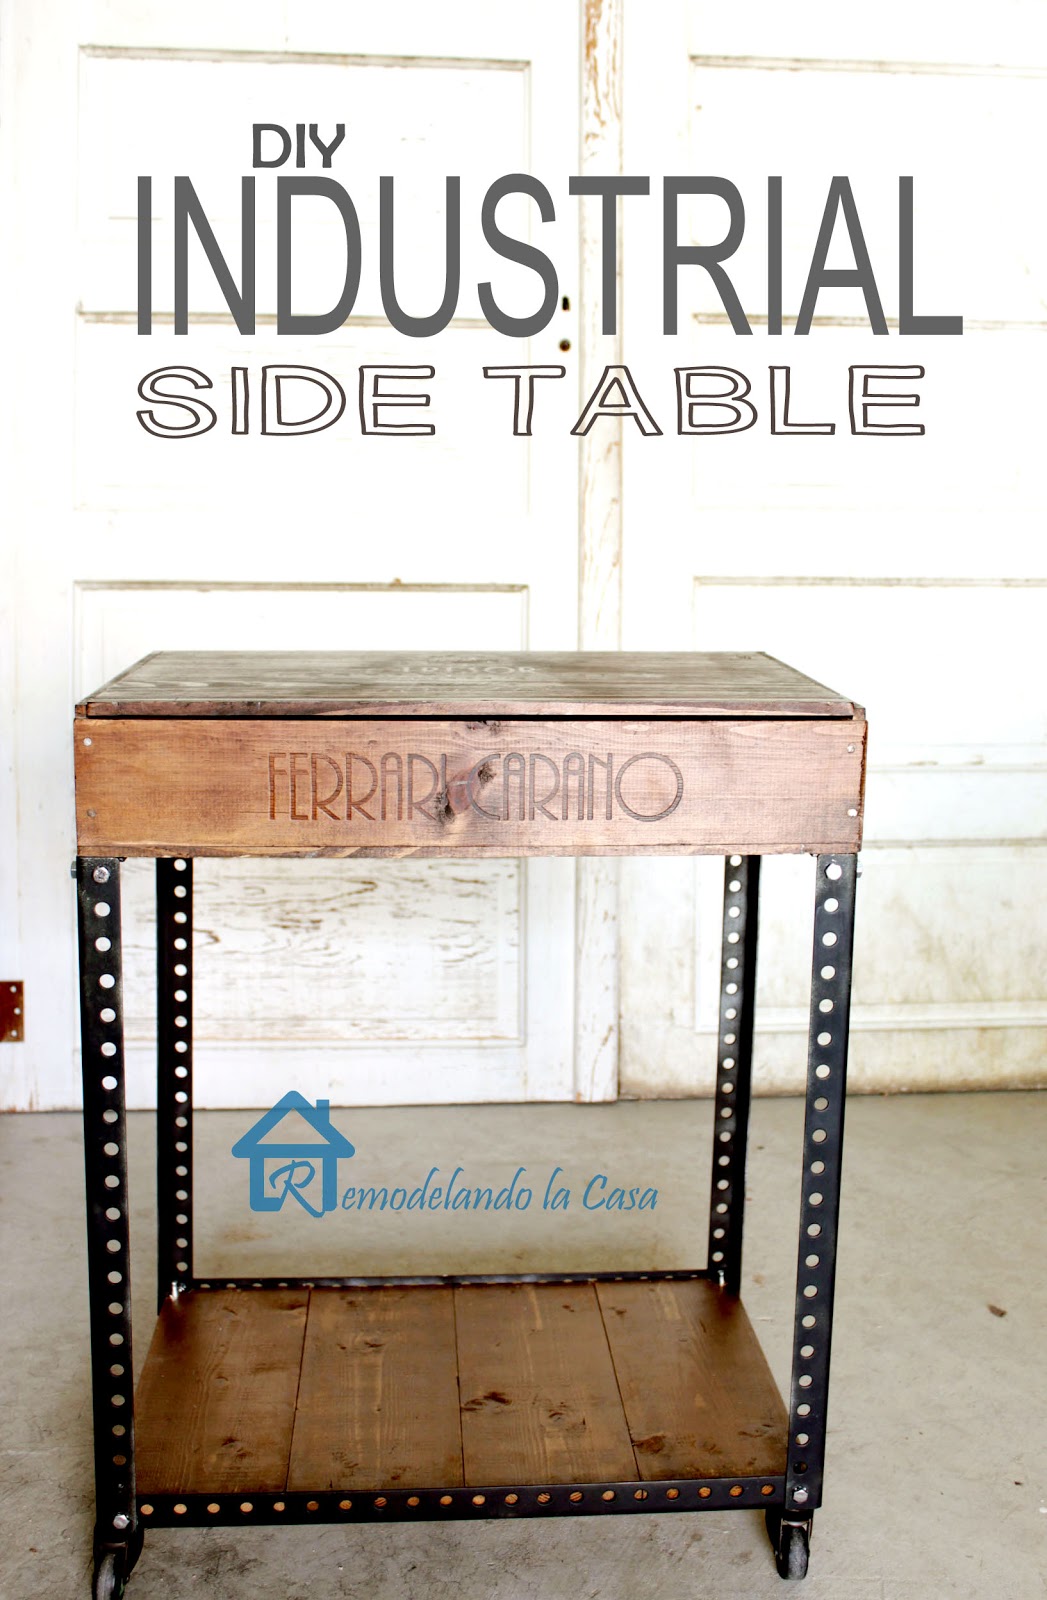 DIY Industrial Side Table - Remodelando la Casa